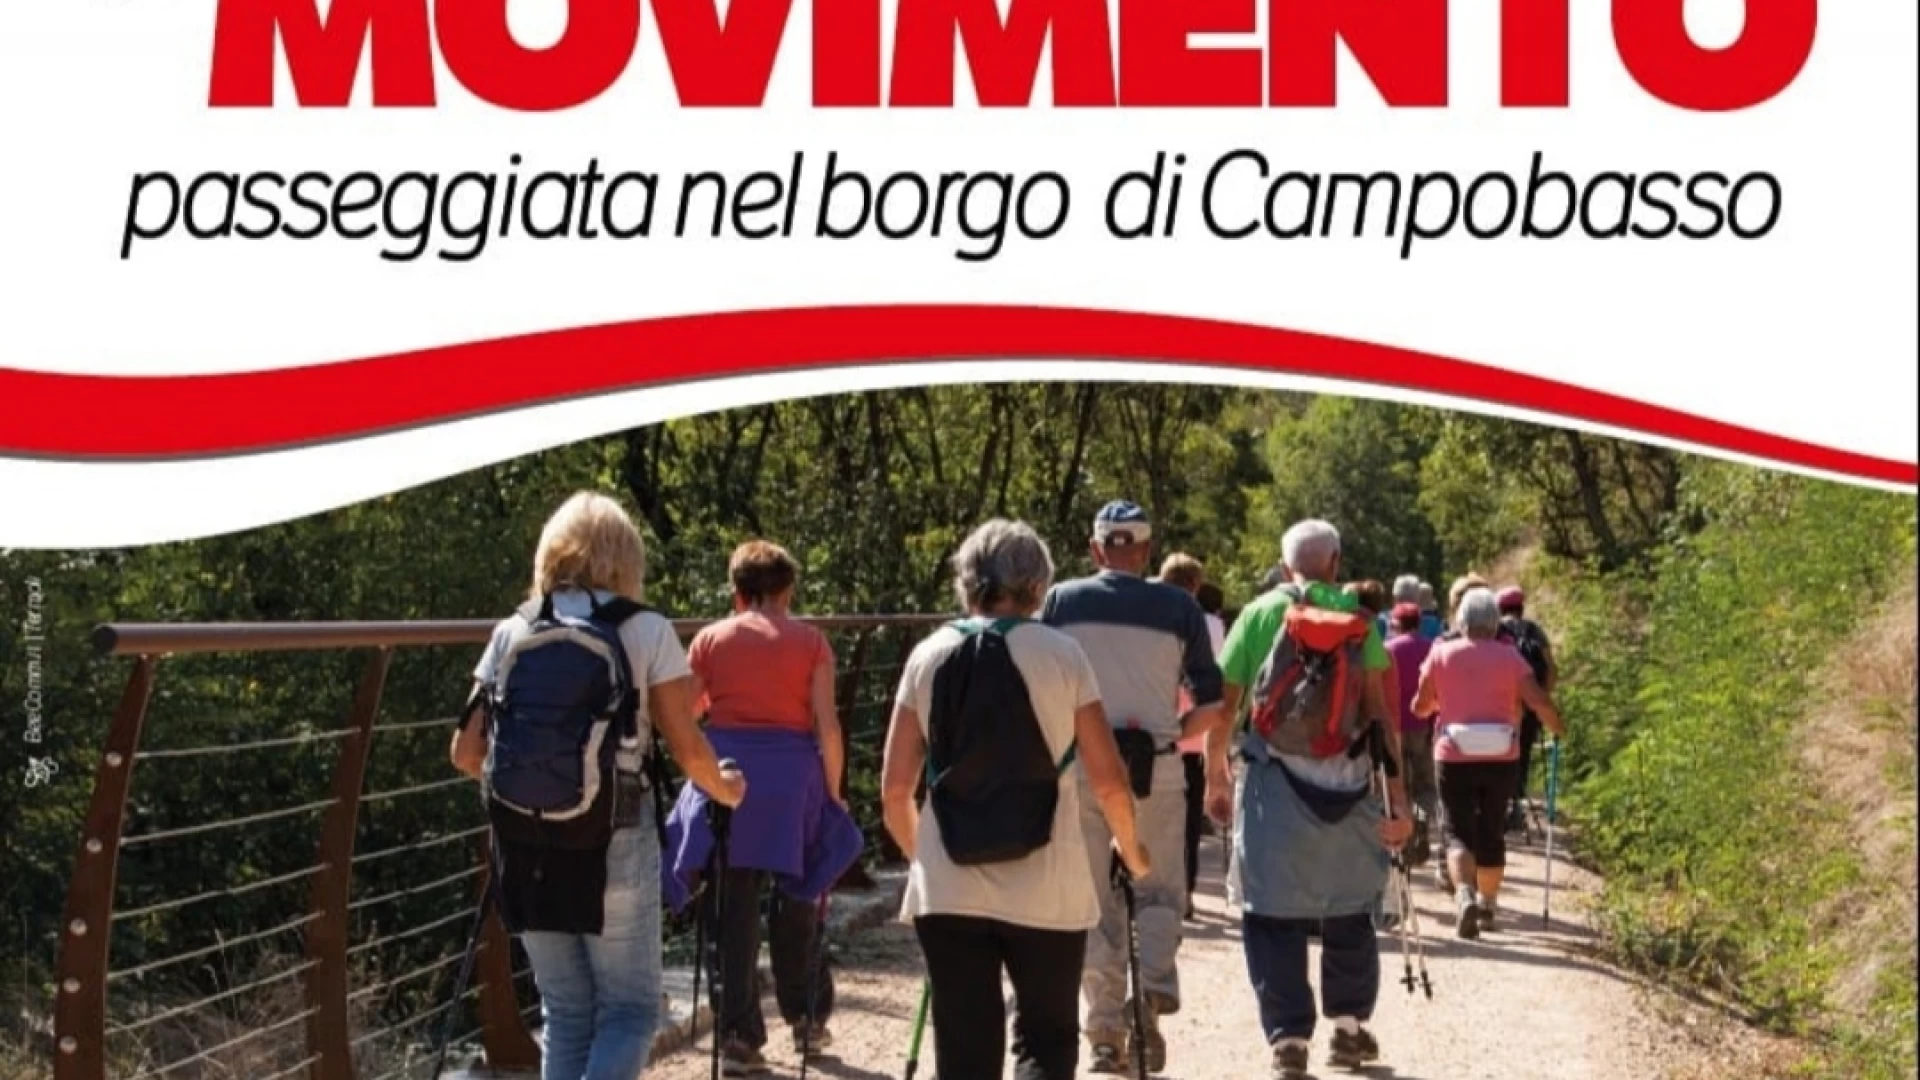 Campobasso: la Lilt propone una passeggiata per la prevenzione nel centro storico di Campobasso